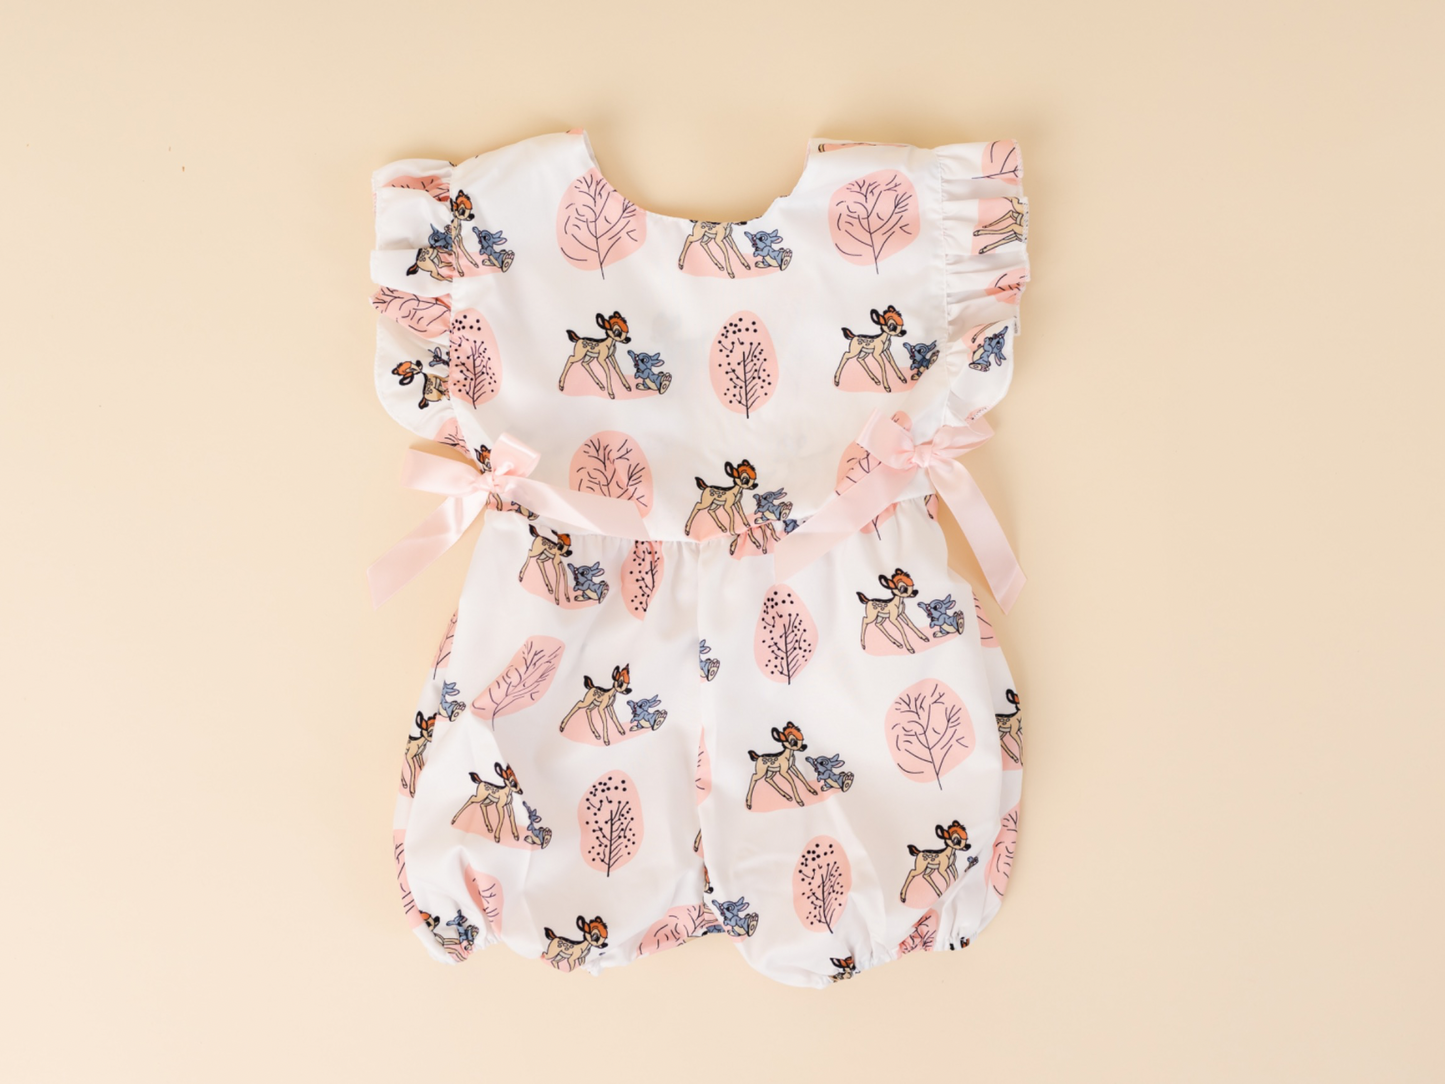 soft Romper Jumpsuit for newborn infant clothes - Patucia